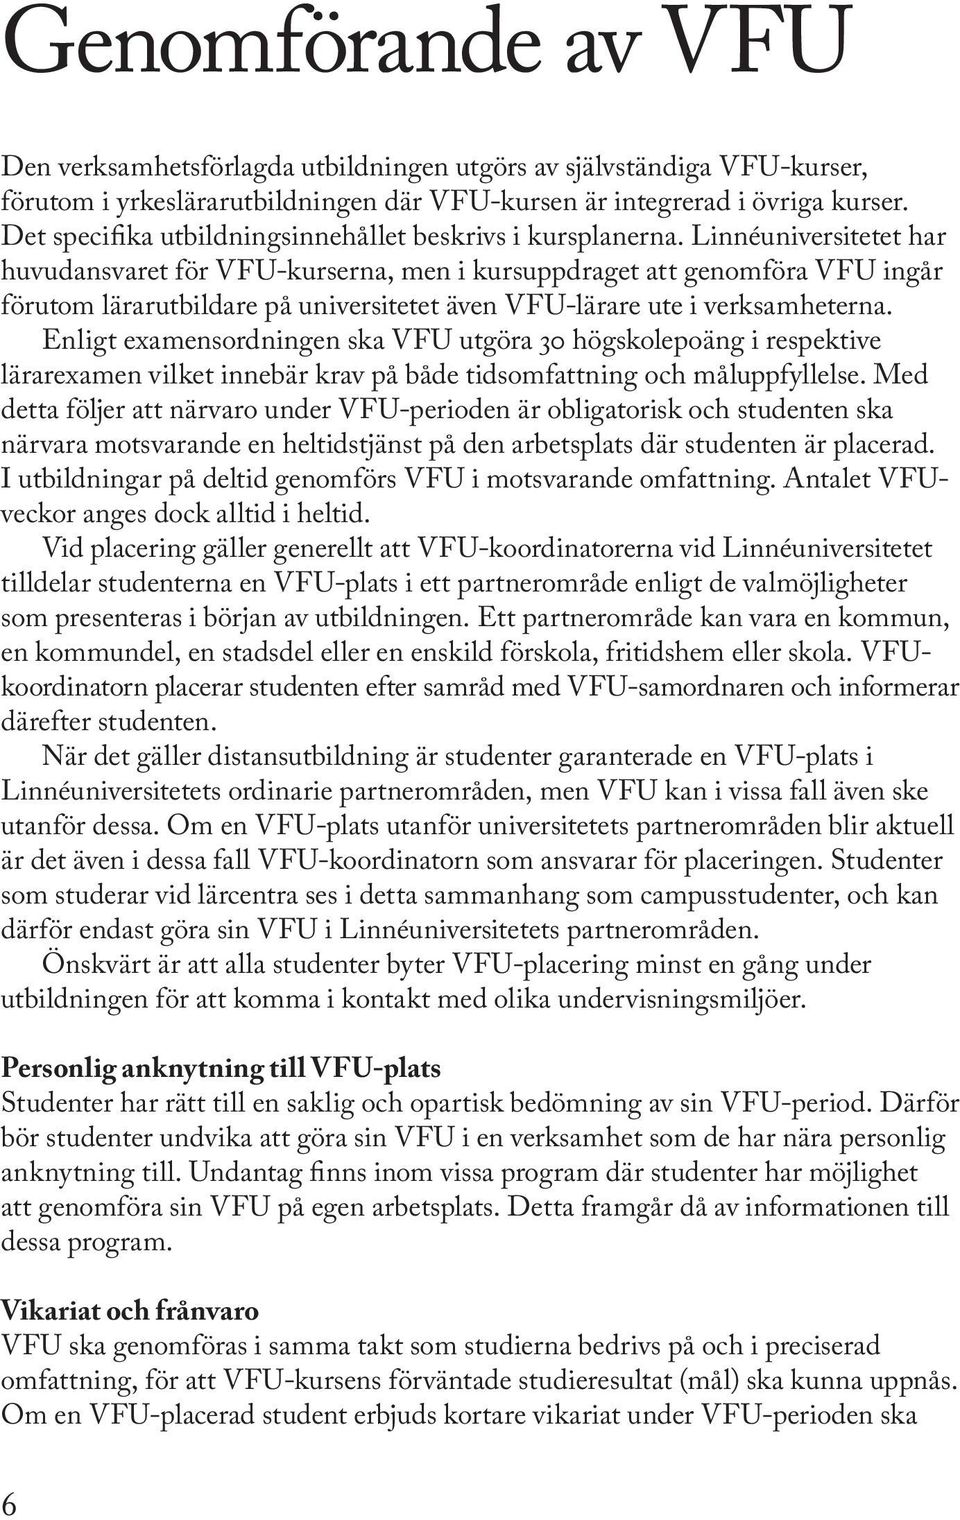 Linnéuniversitetet har huvudansvaret för VFU-kurserna, men i kursuppdraget att genomföra VFU ingår förutom lärarutbildare på universitetet även VFU-lärare ute i verksamheterna.